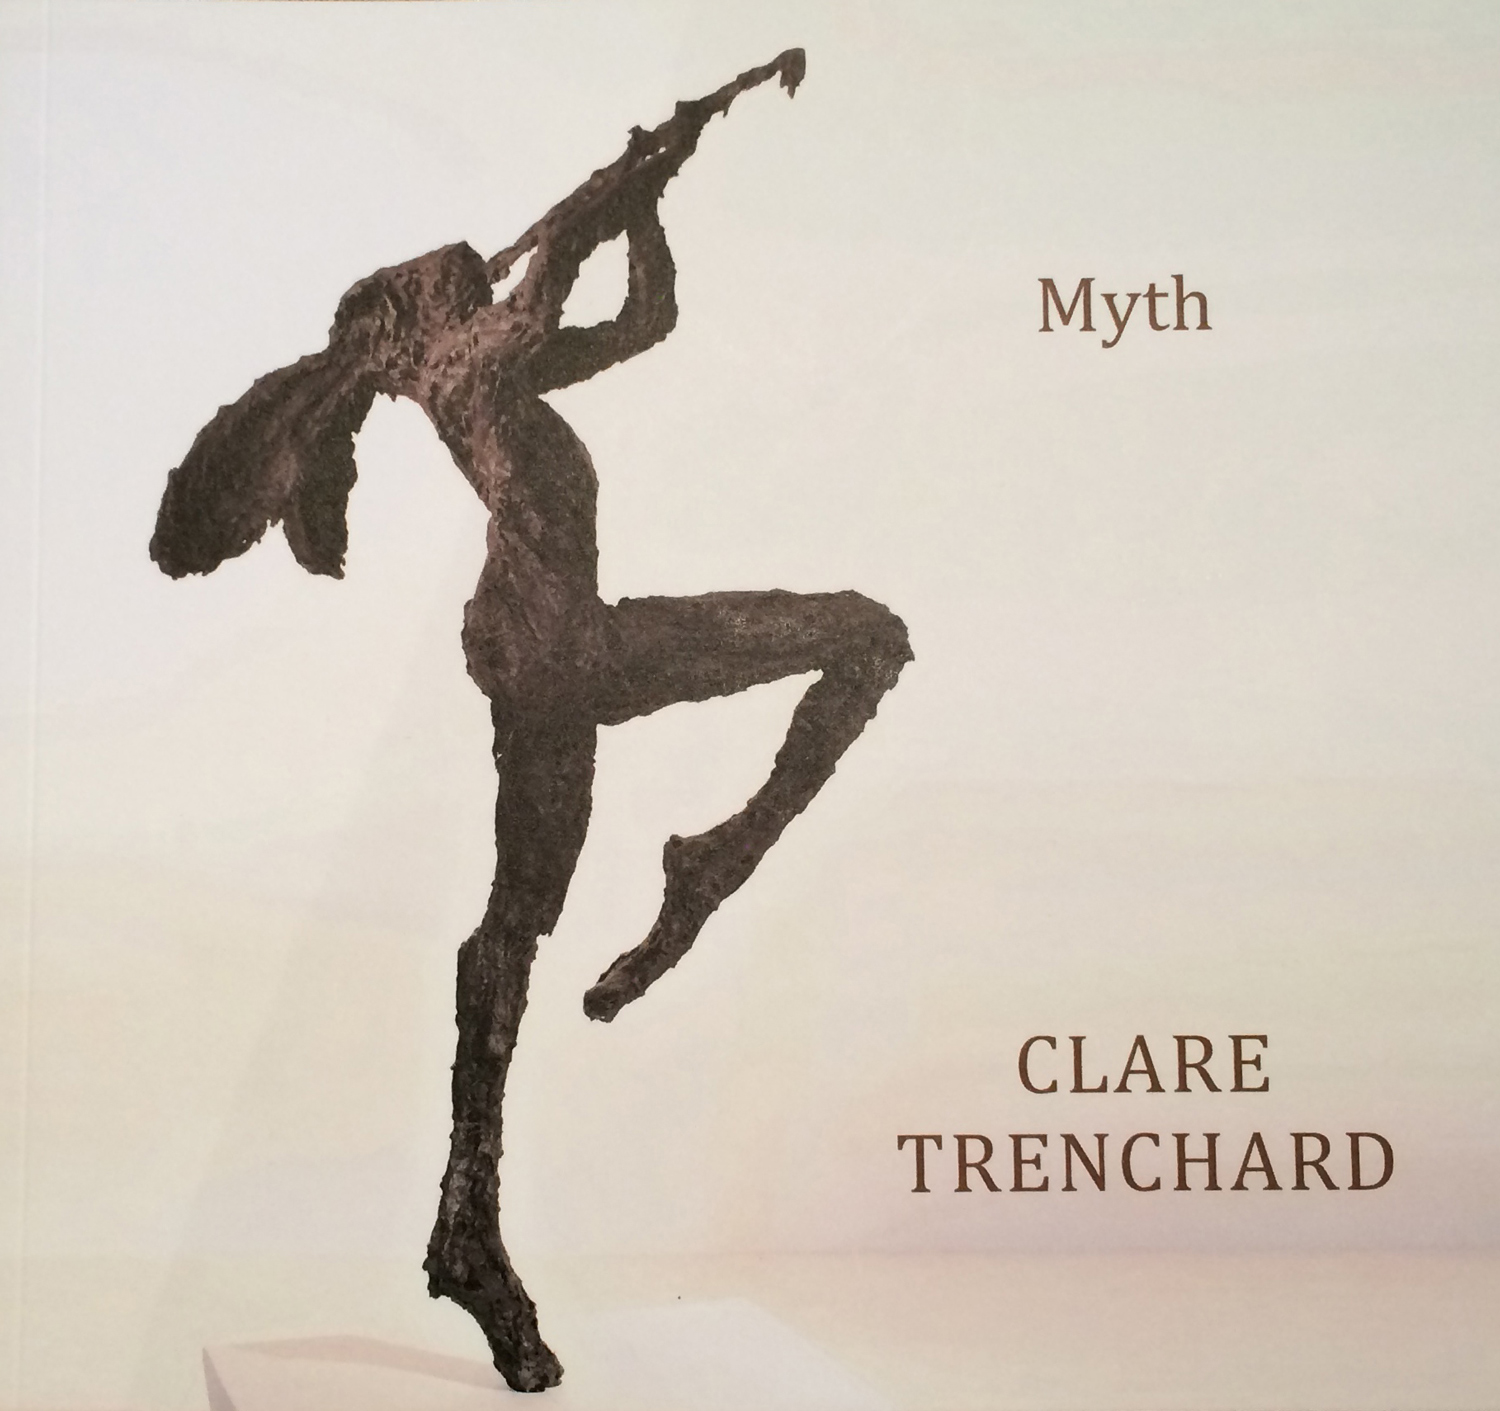 Clare Trenchard Myth